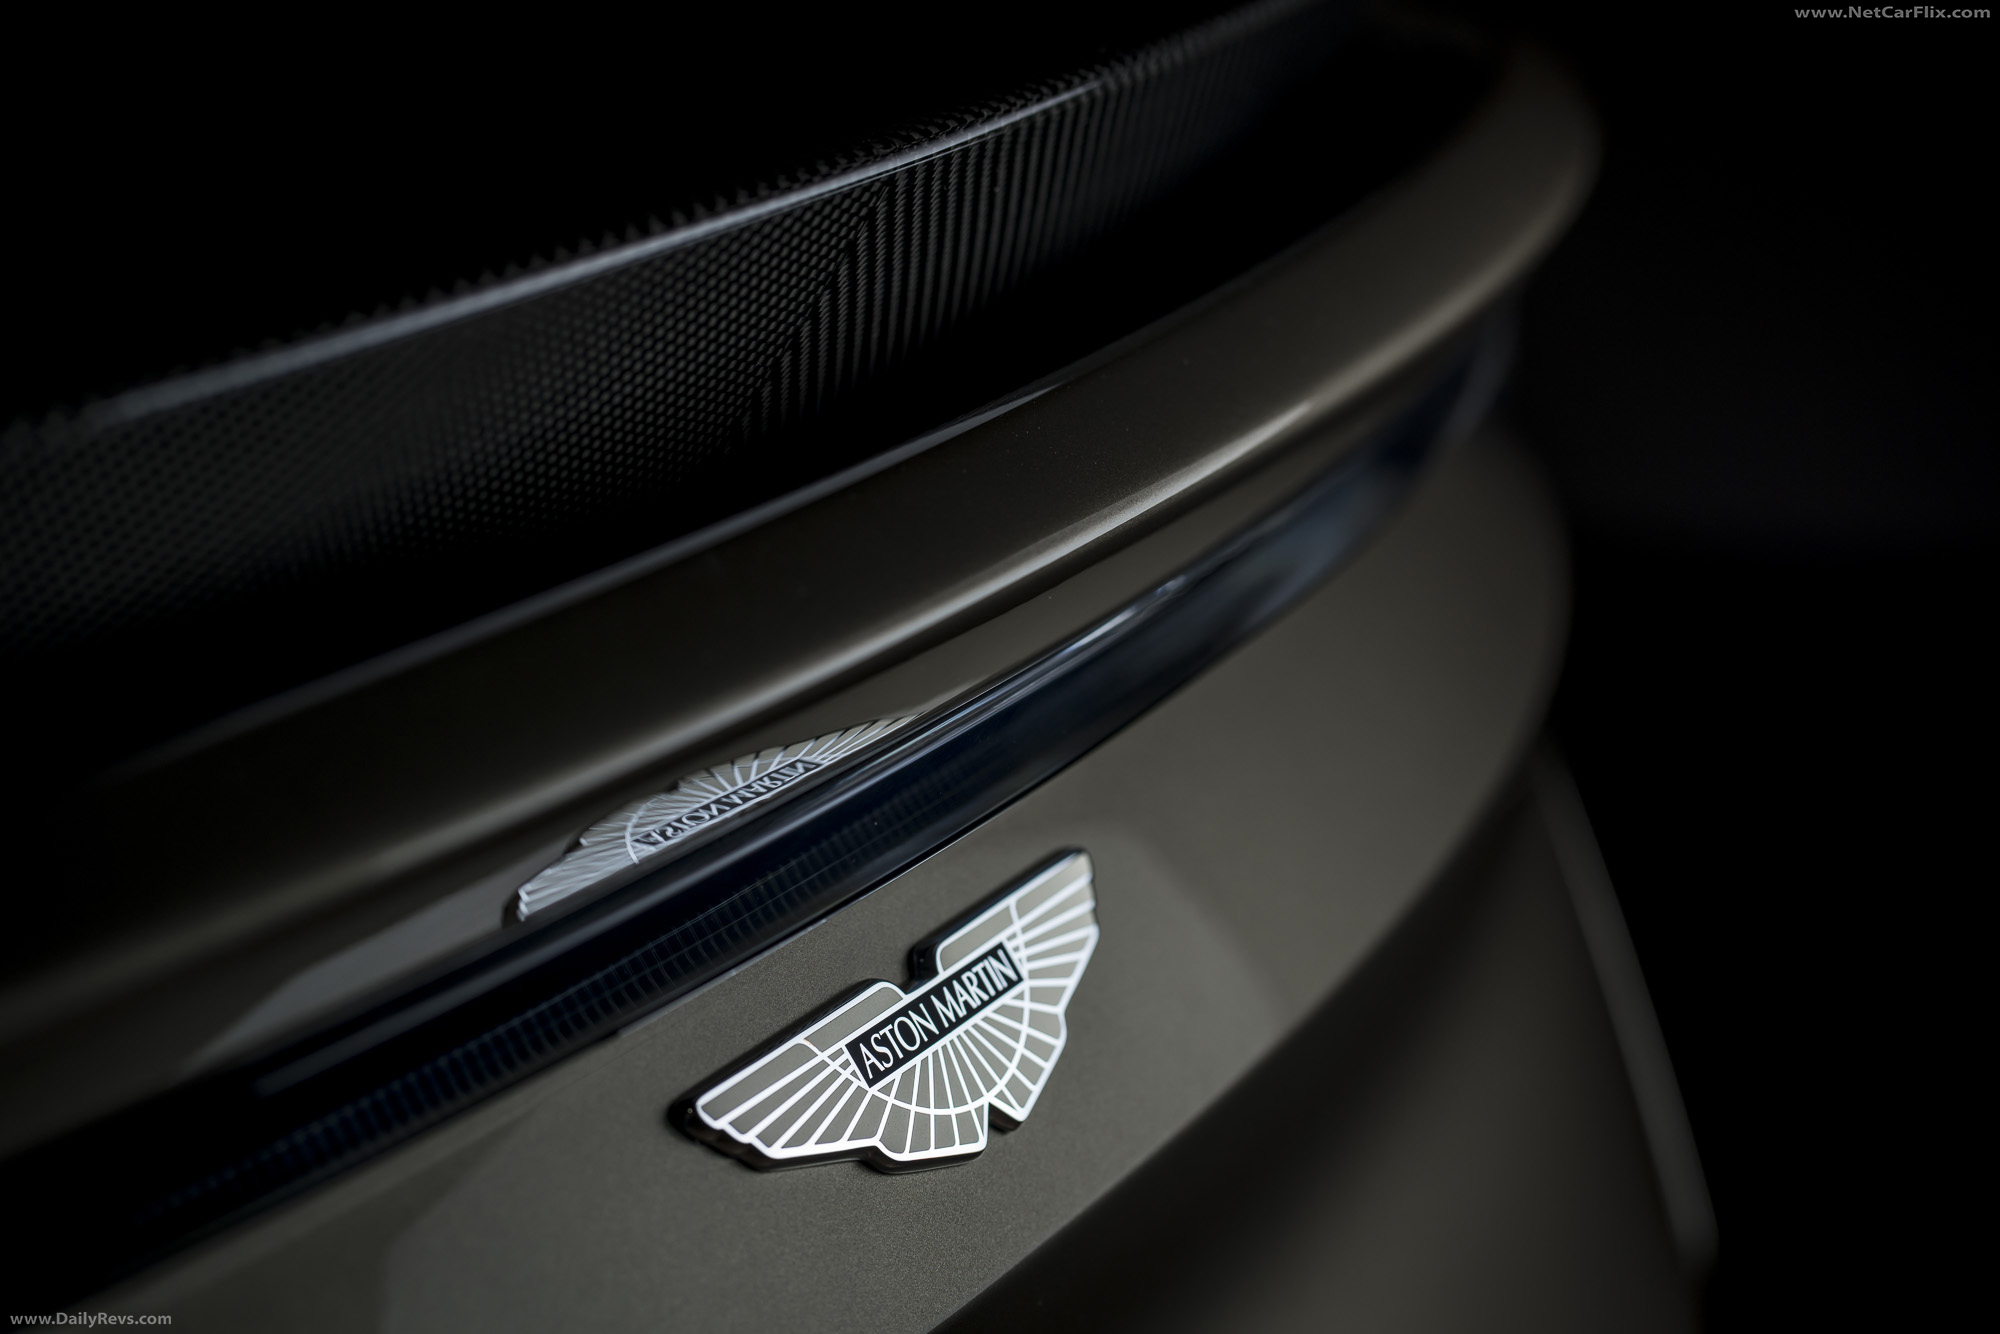 2019 Aston Martin DBS Superleggera OHMSS Edition